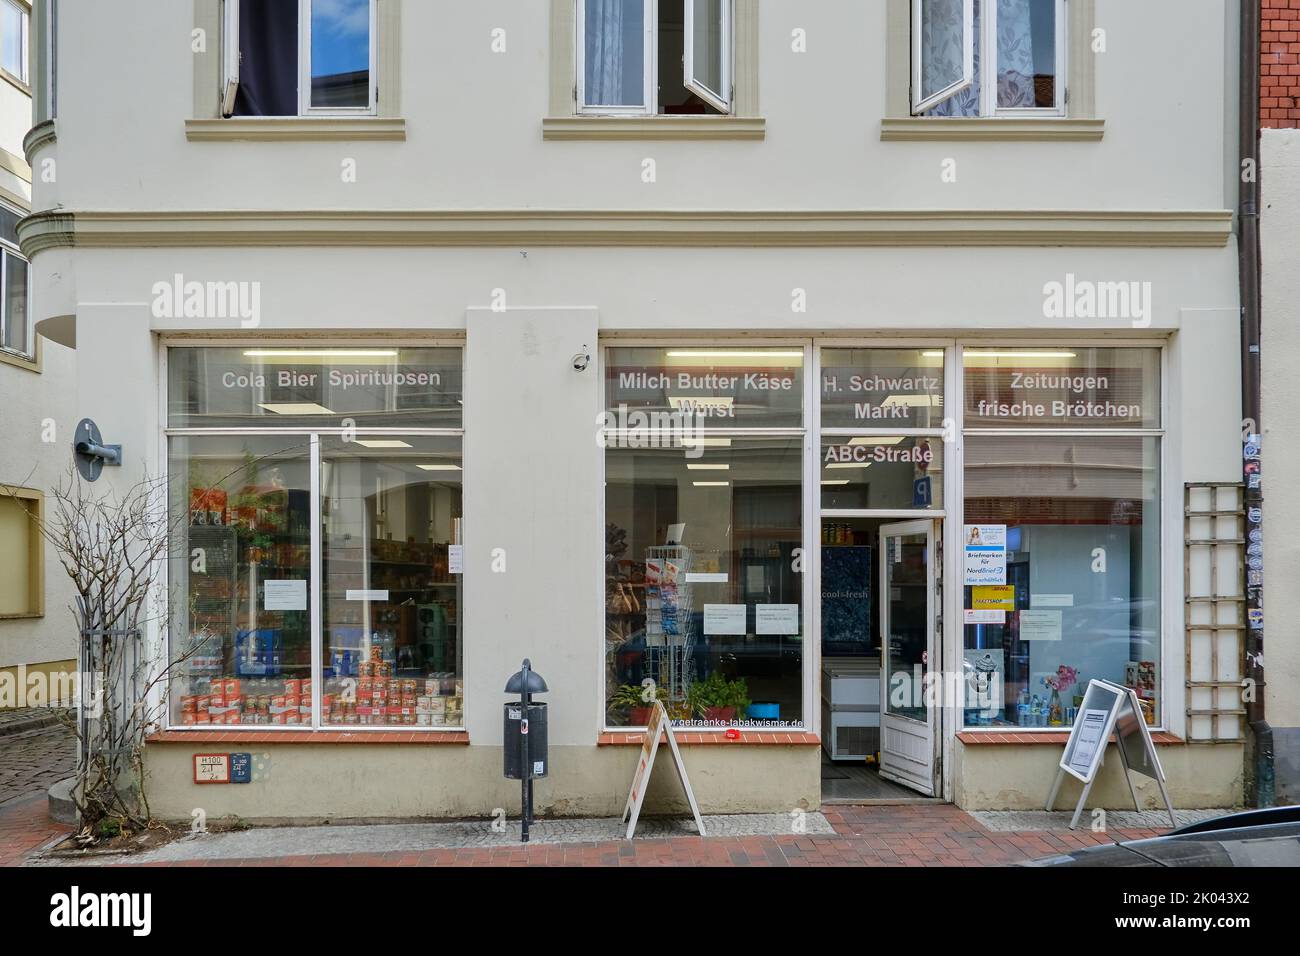 Città anseatica di Wismar, Meclemburgo-Pomerania occidentale, Germania, Europa, agosto 22, 2022: Vista esterna della finestra del mercato Schwartz. Foto Stock